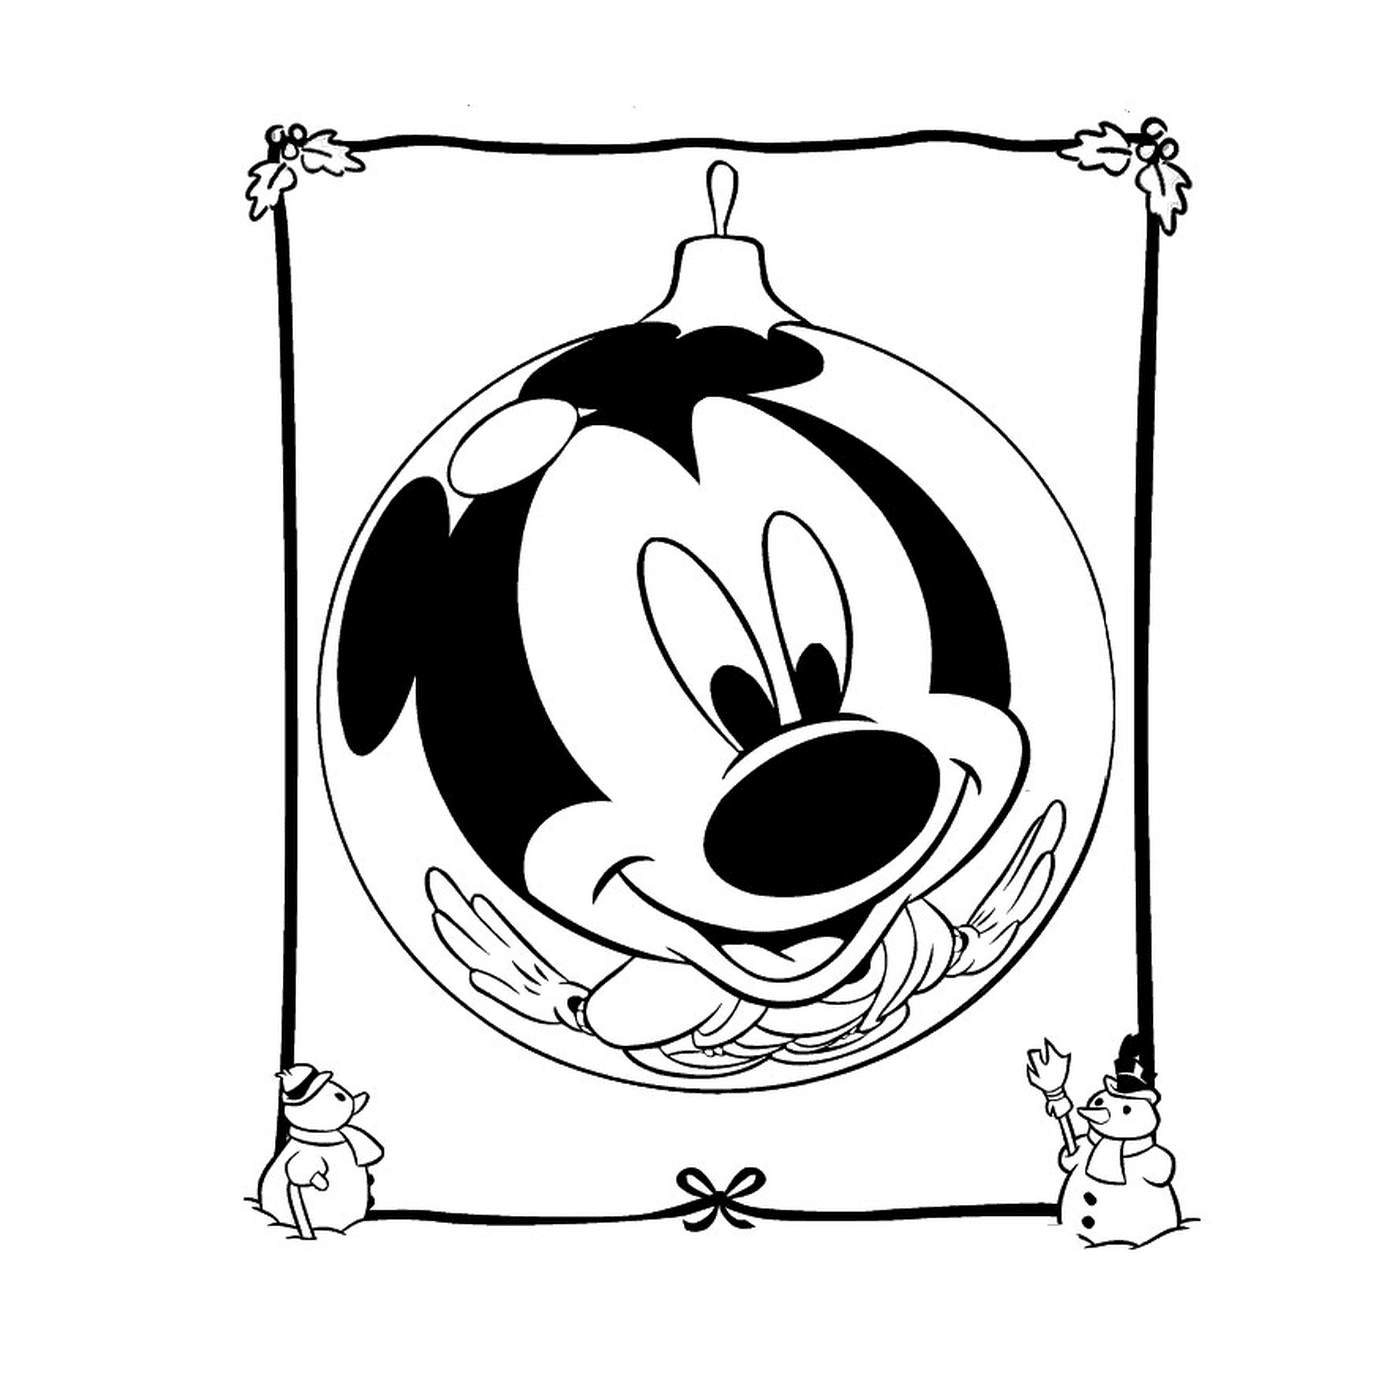  Mickey Mouse da Disney 